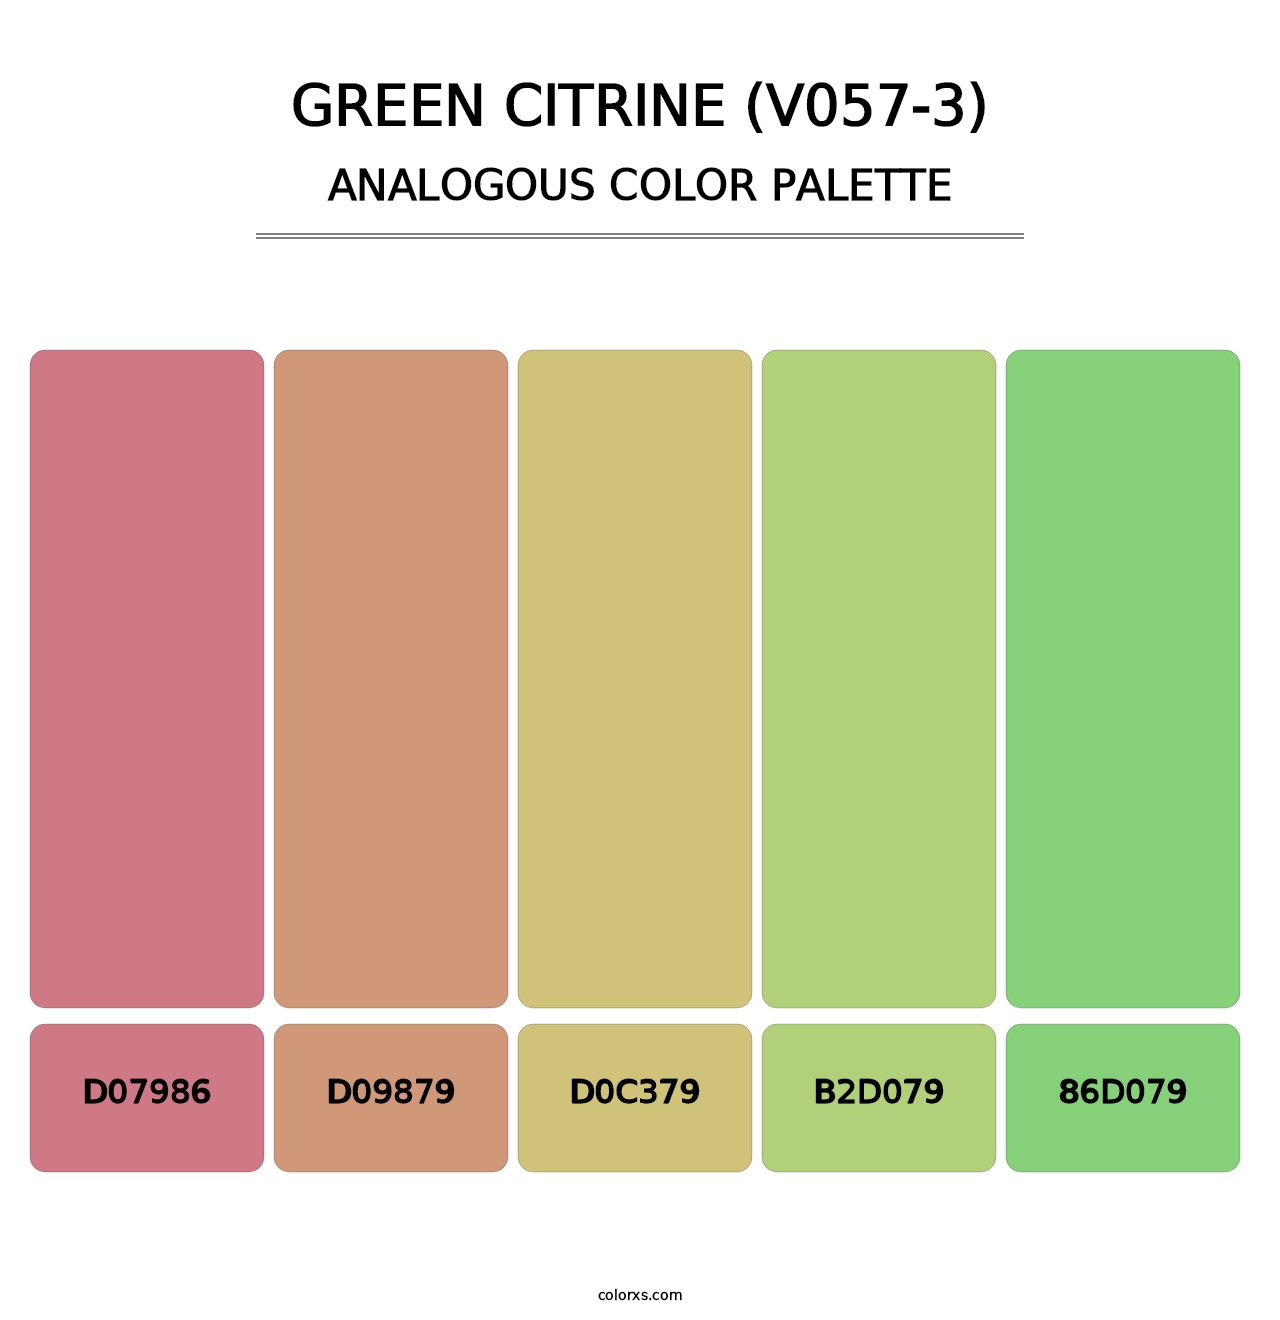 Green Citrine (V057-3) - Analogous Color Palette